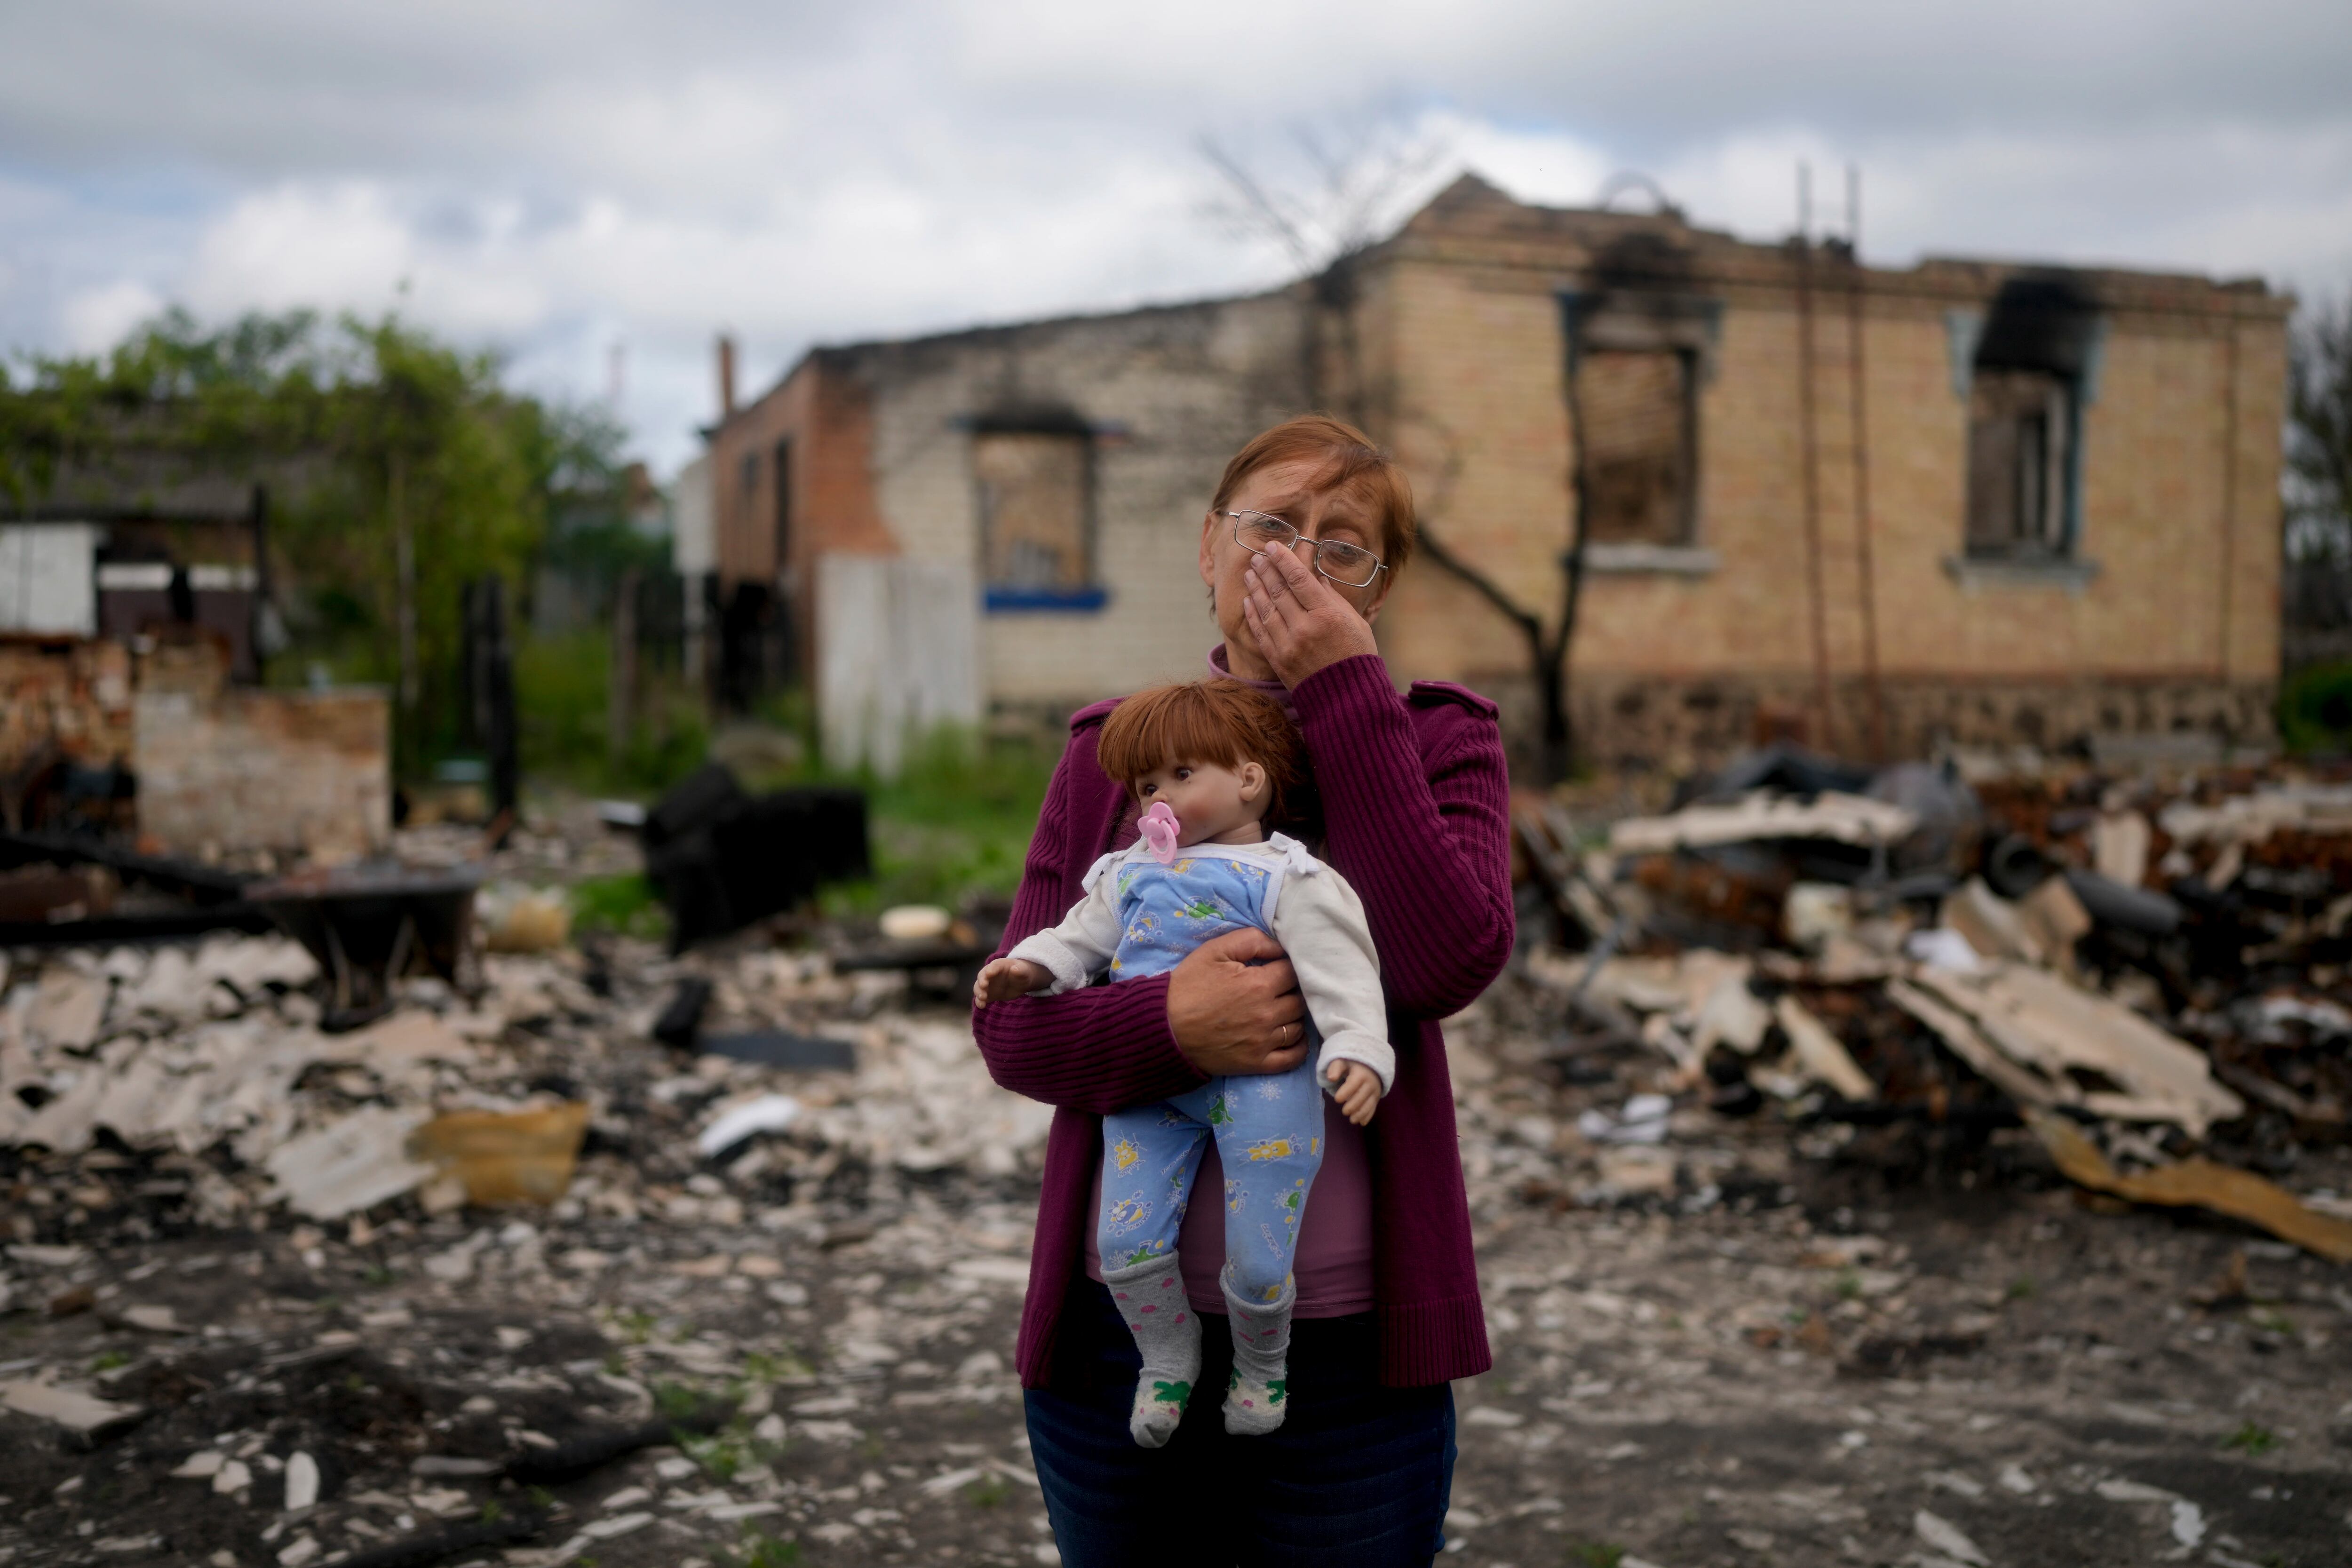 Nila Zelinska sostiene una muñeca que pertenece a su nieta, que pudo encontrar en su casa destruida en las afueras de Potashnya, Kiev, Ucrania, el martes 31 de mayo de 2022. Zelinska acaba de regresar a su ciudad natal después de escapar de la guerra y descubrir que no tiene hogar.